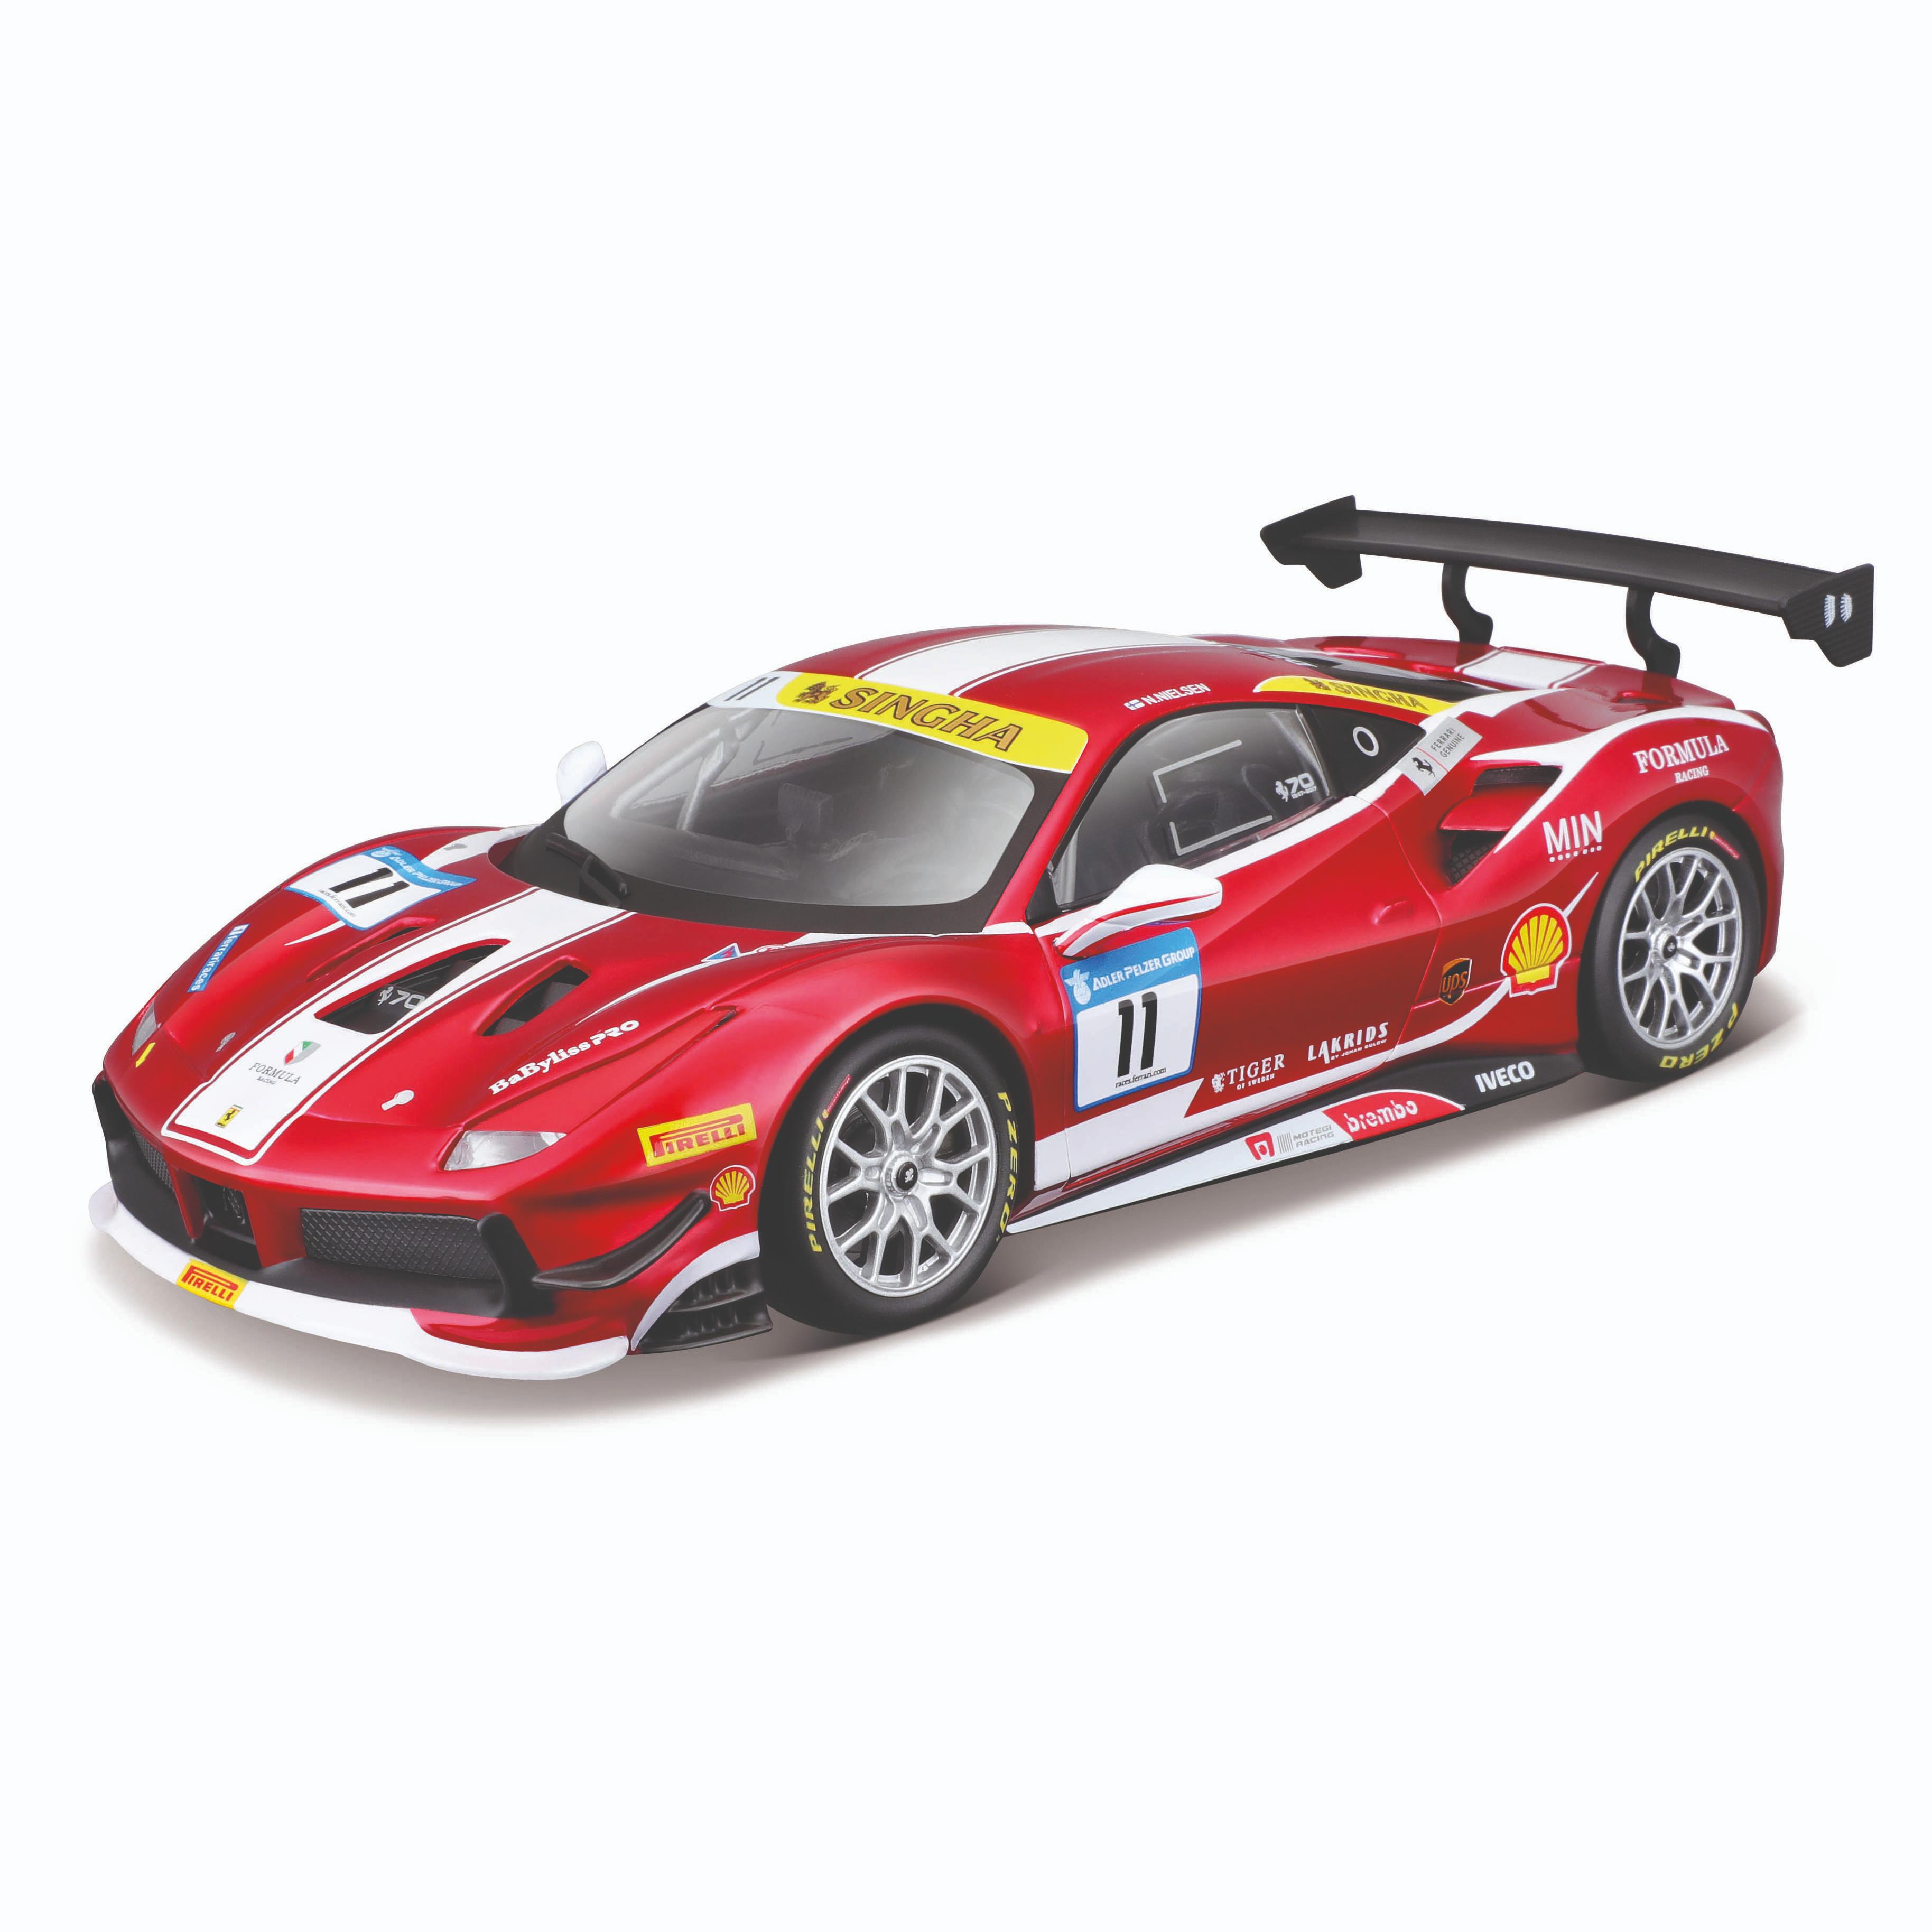 Коллекционная машинка Bburago Феррари 1:24 Ferrari Racing 488 Challenge,красная